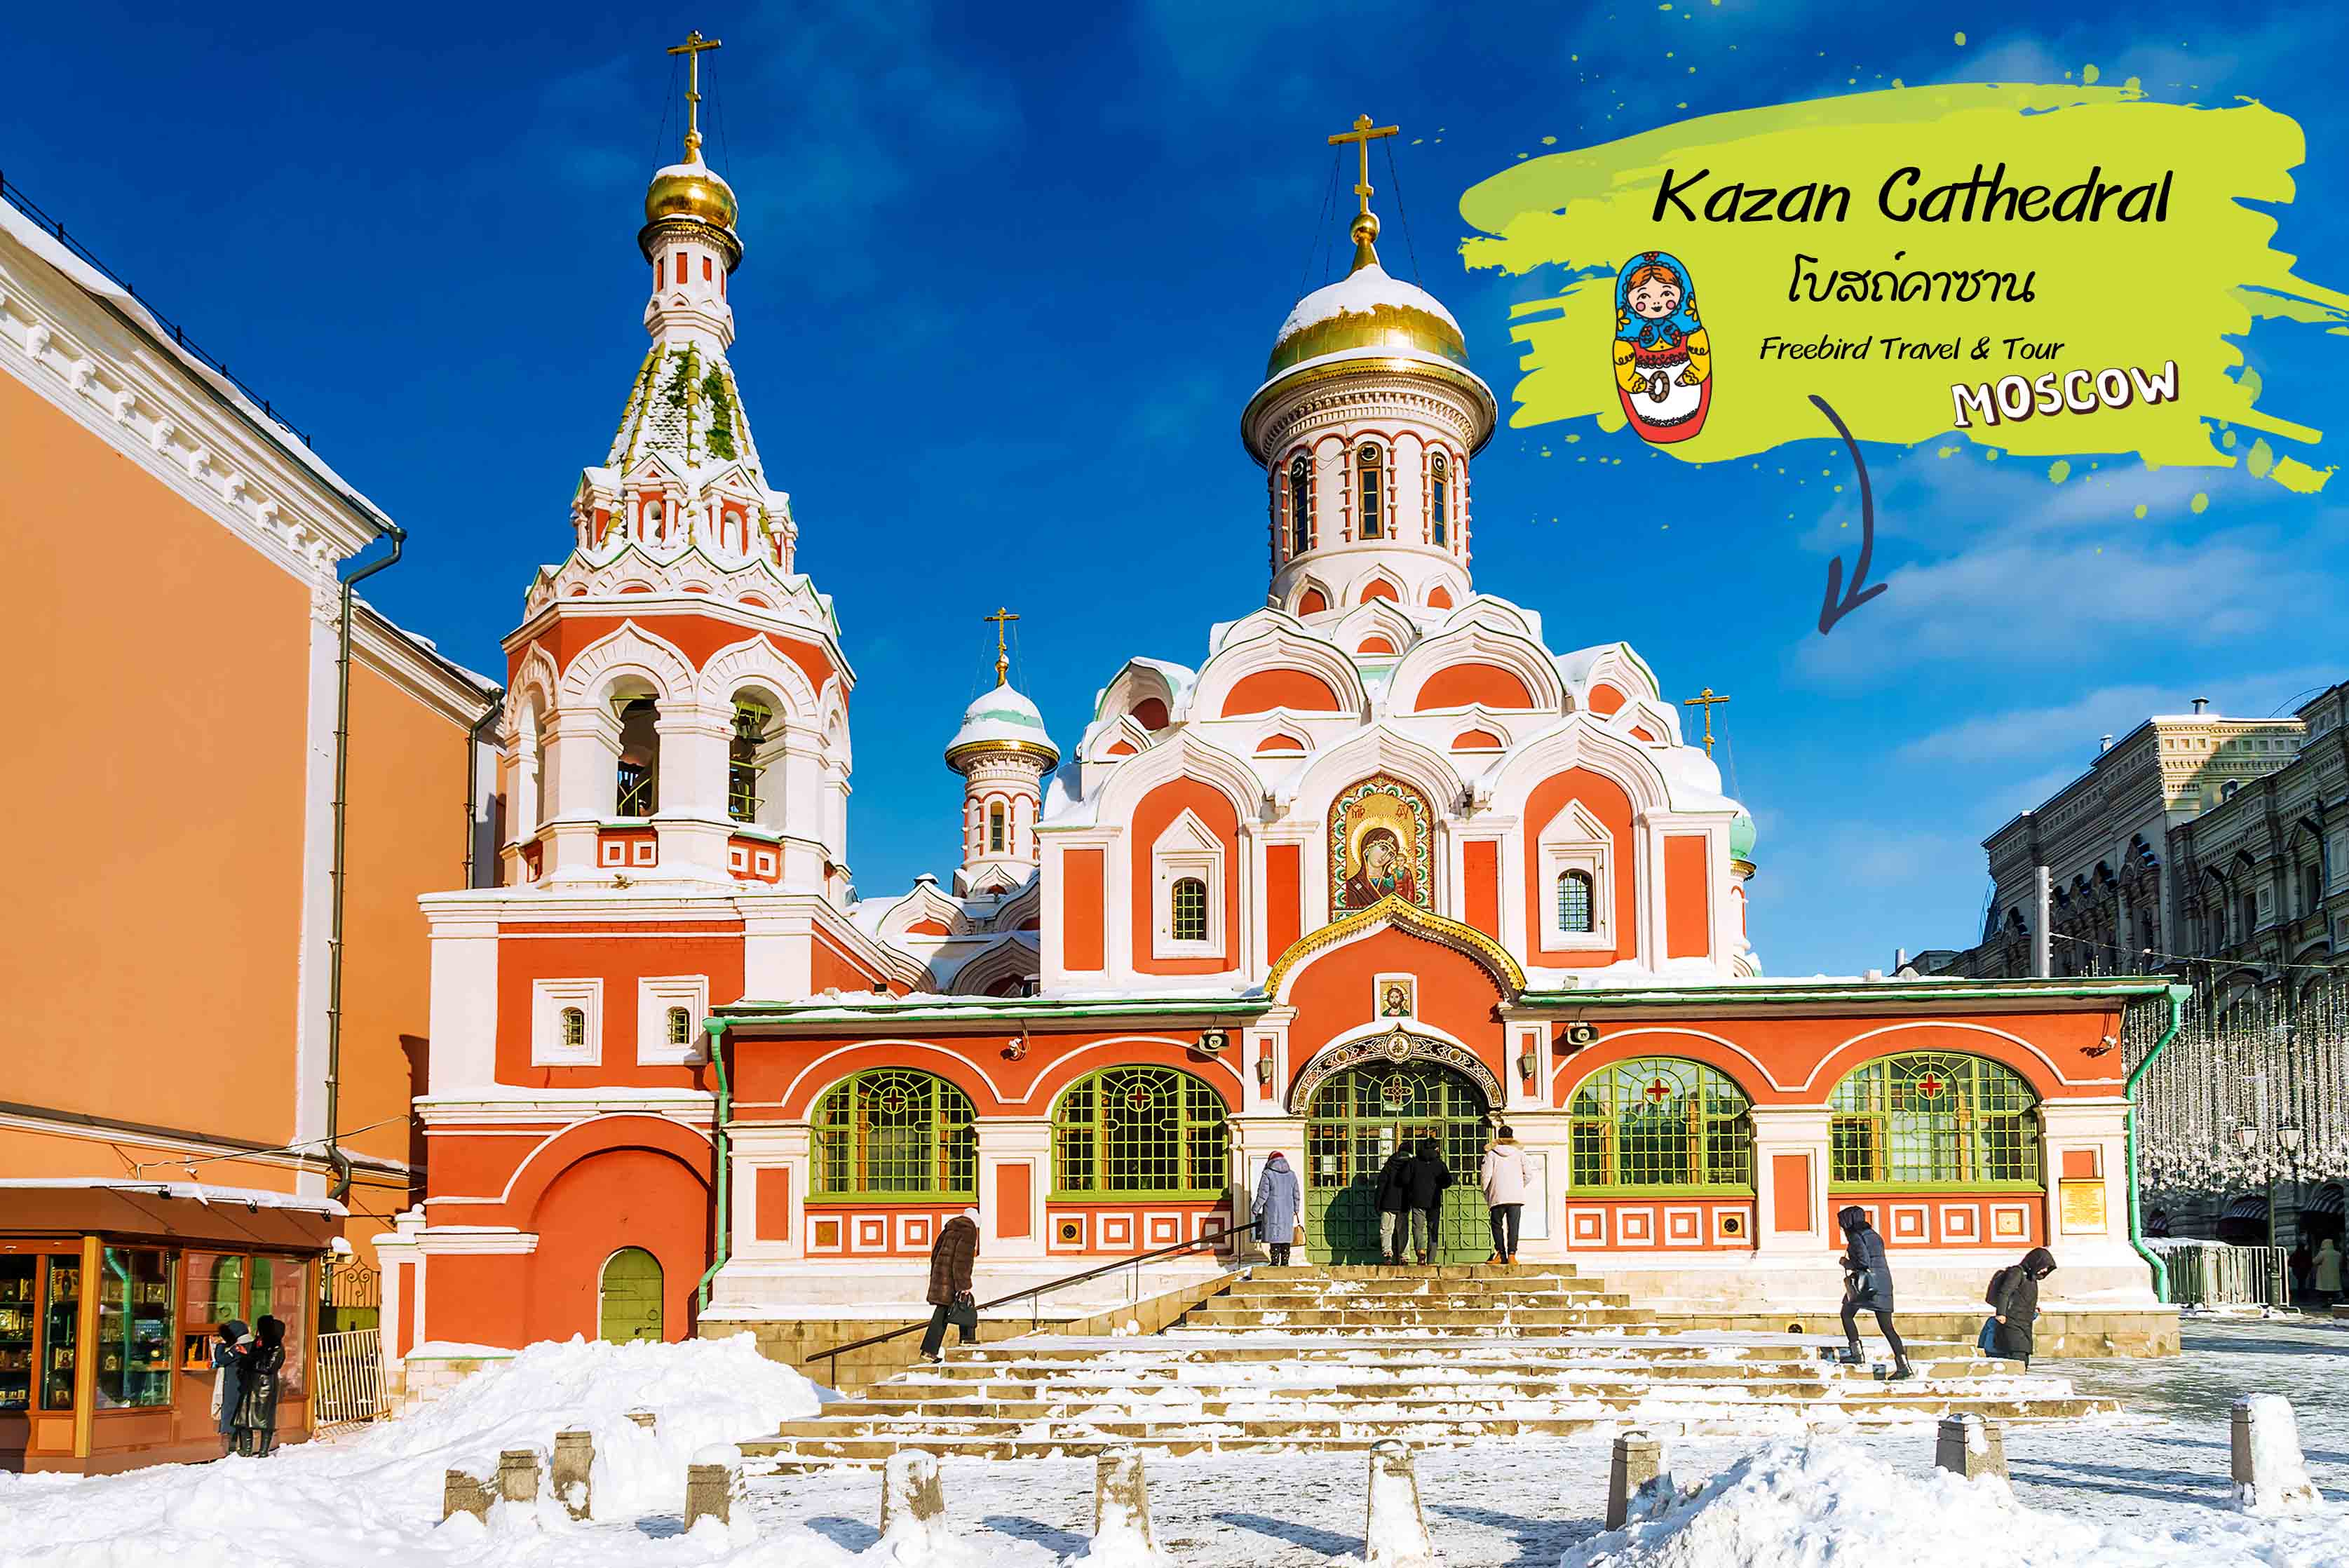 โบสถ์คาซาน (Kazan Cathedral)